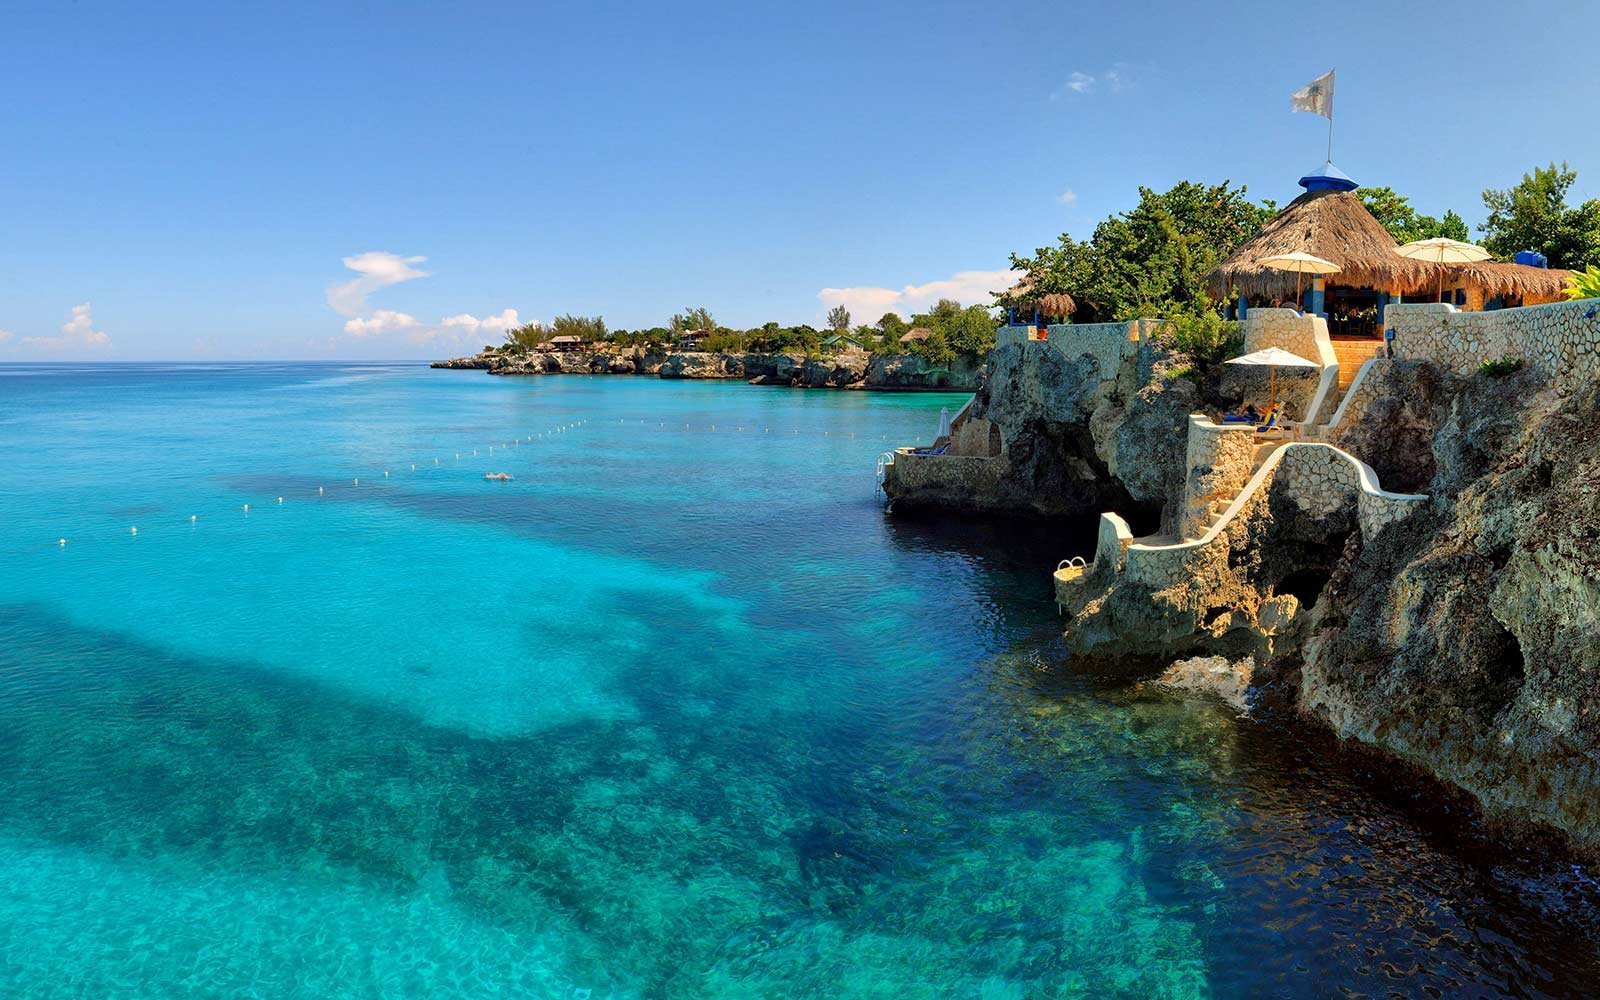 Комфортный пляжный отдых без визы на Ямайке